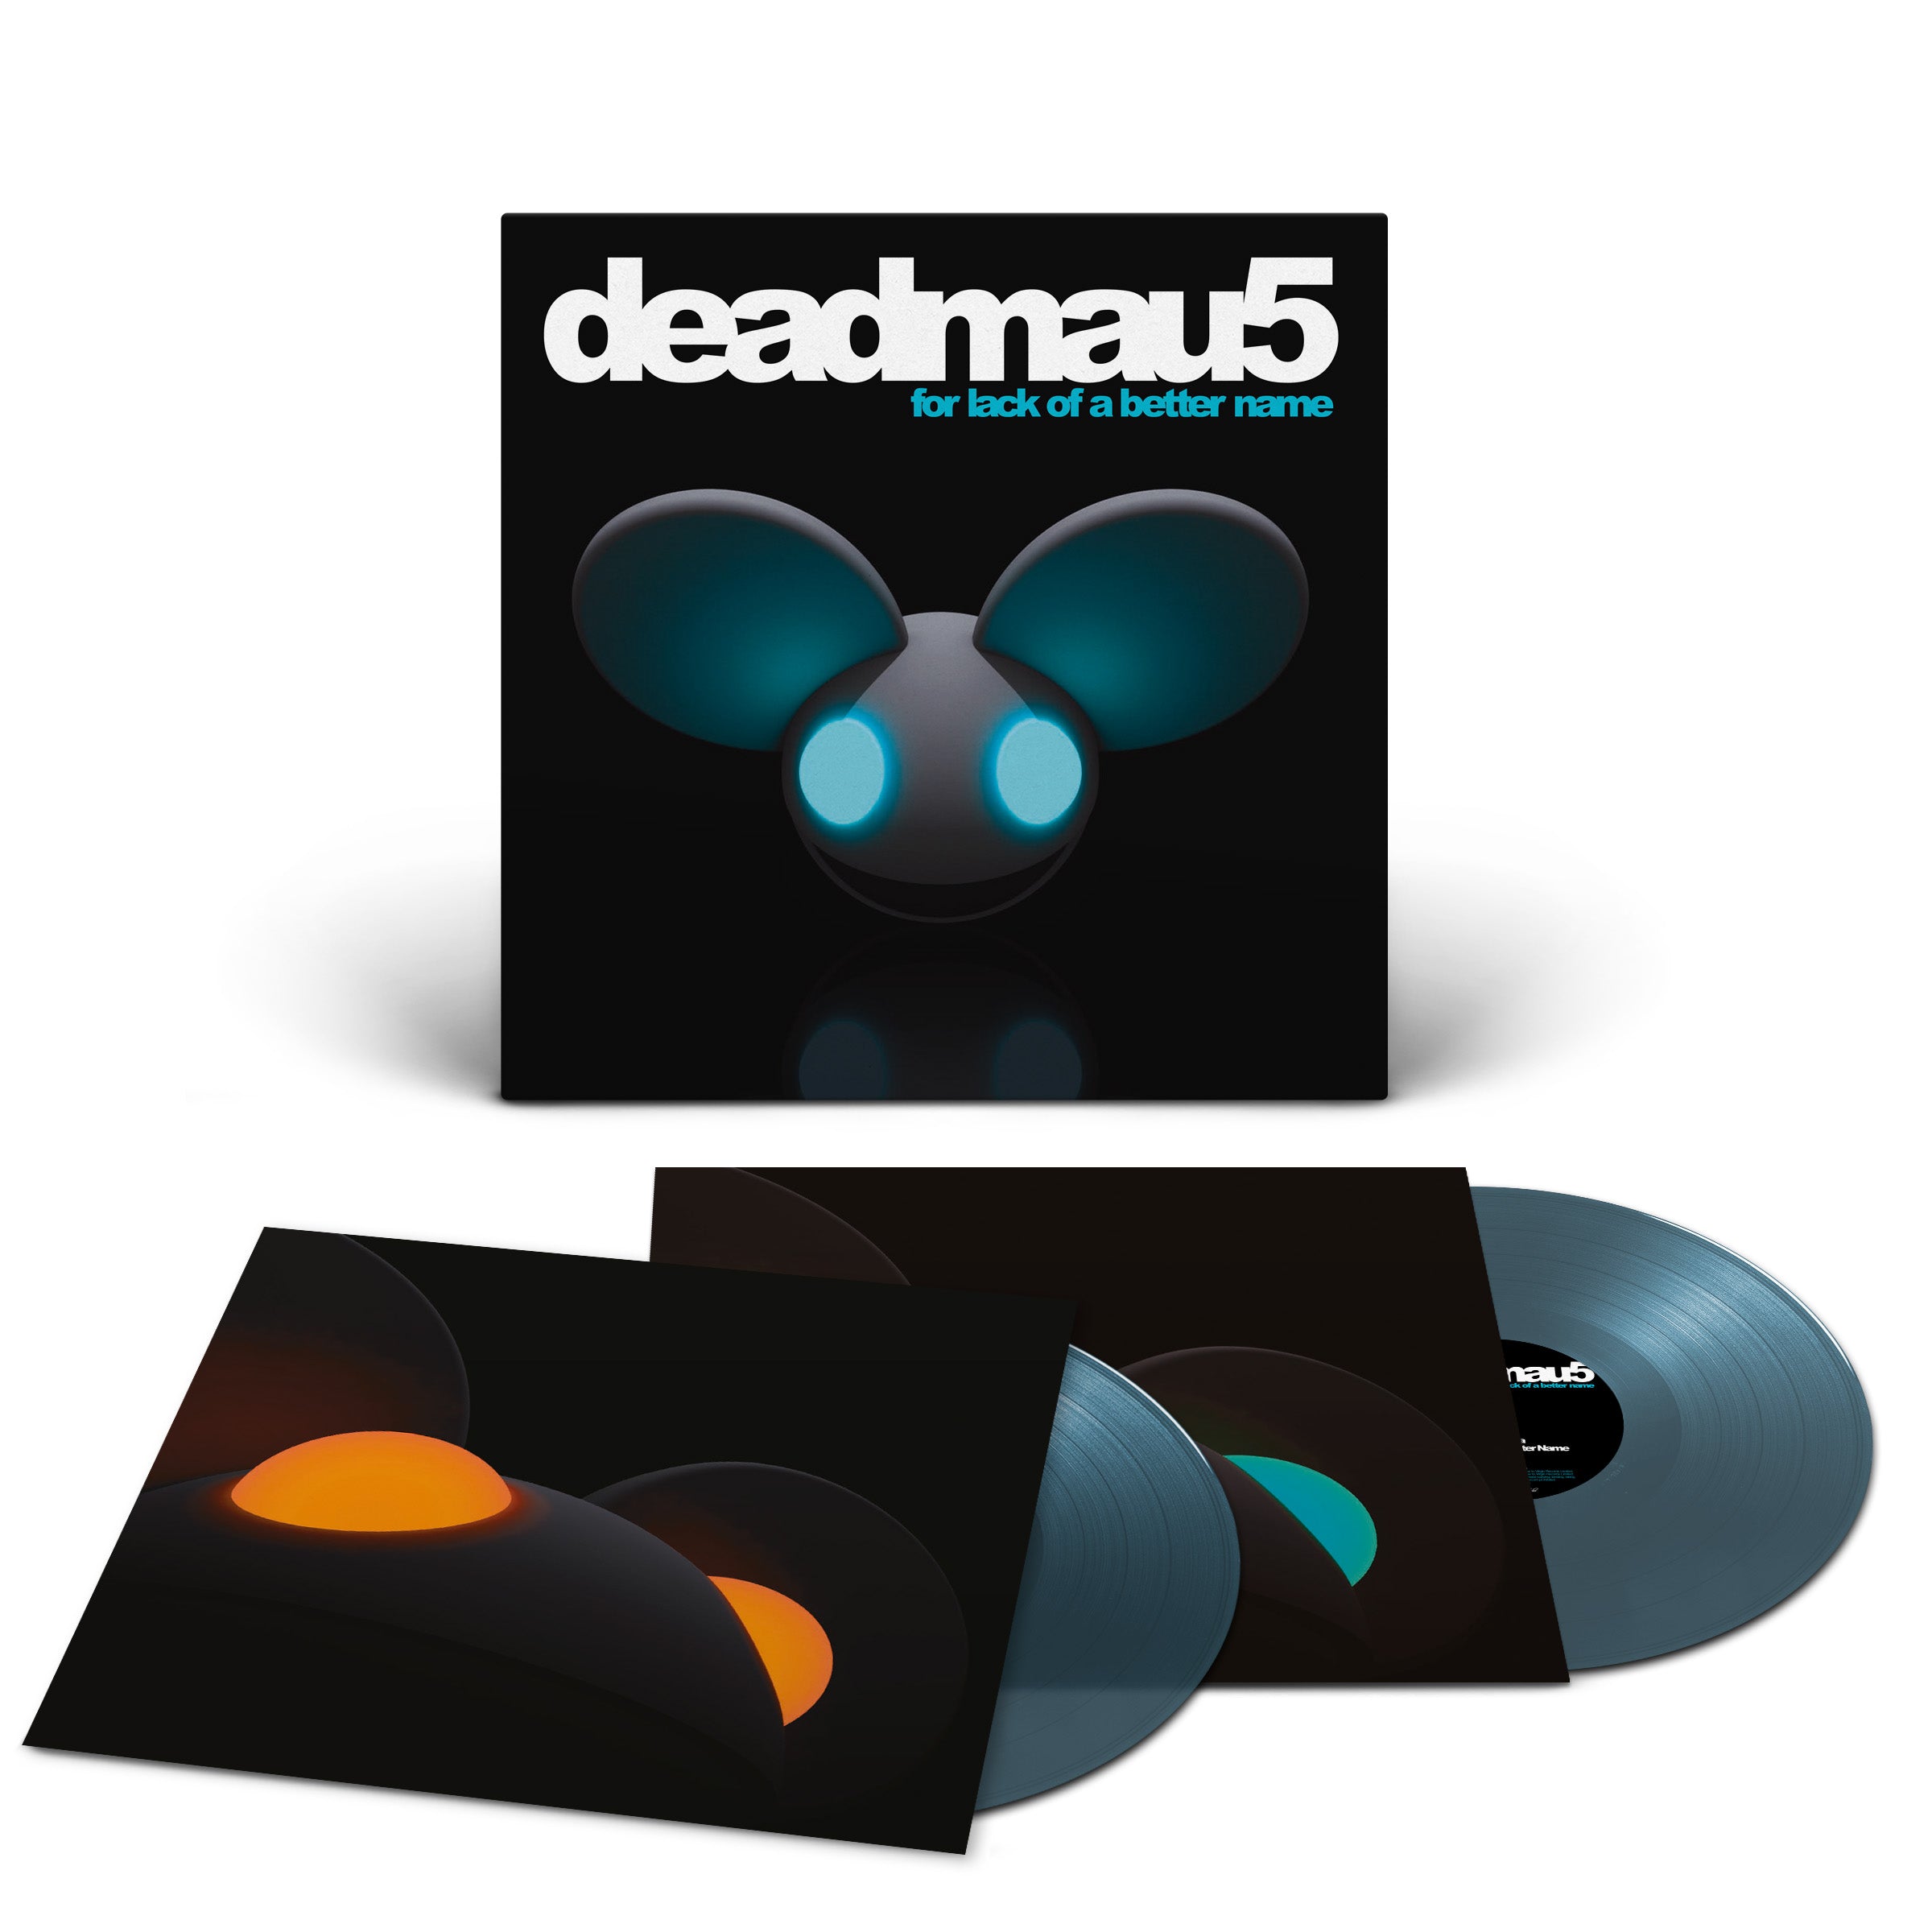 deadmau5 - For Lack Of A Better Name: Translucent Blue Vinyl 2LP